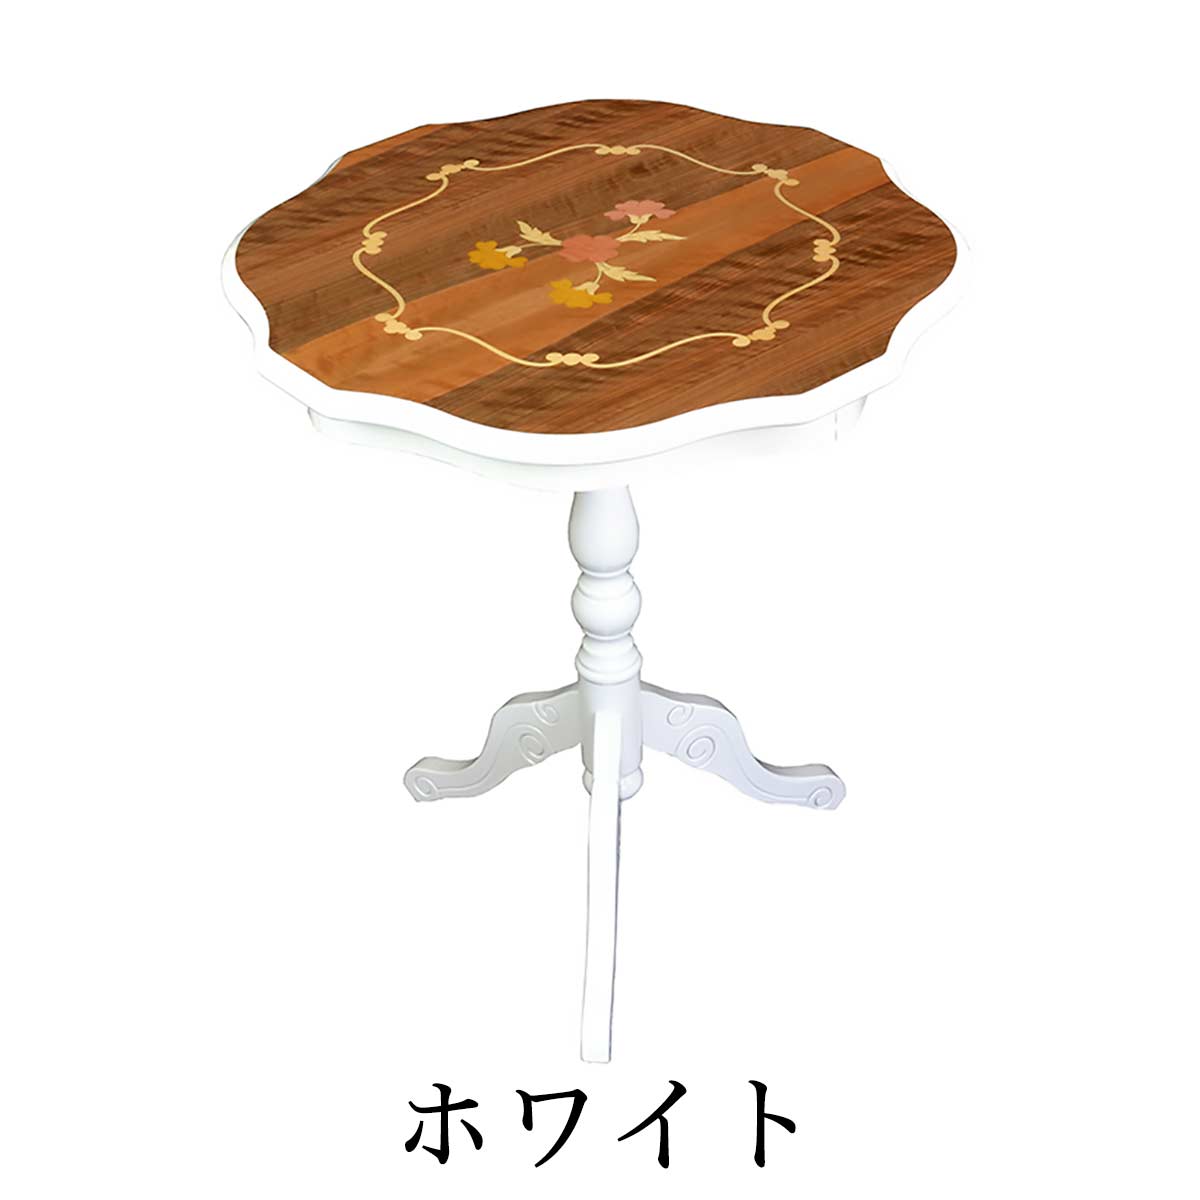 丸テーブル おしゃれ 象嵌 サイドテーブル イタリア家具 ロココ調 